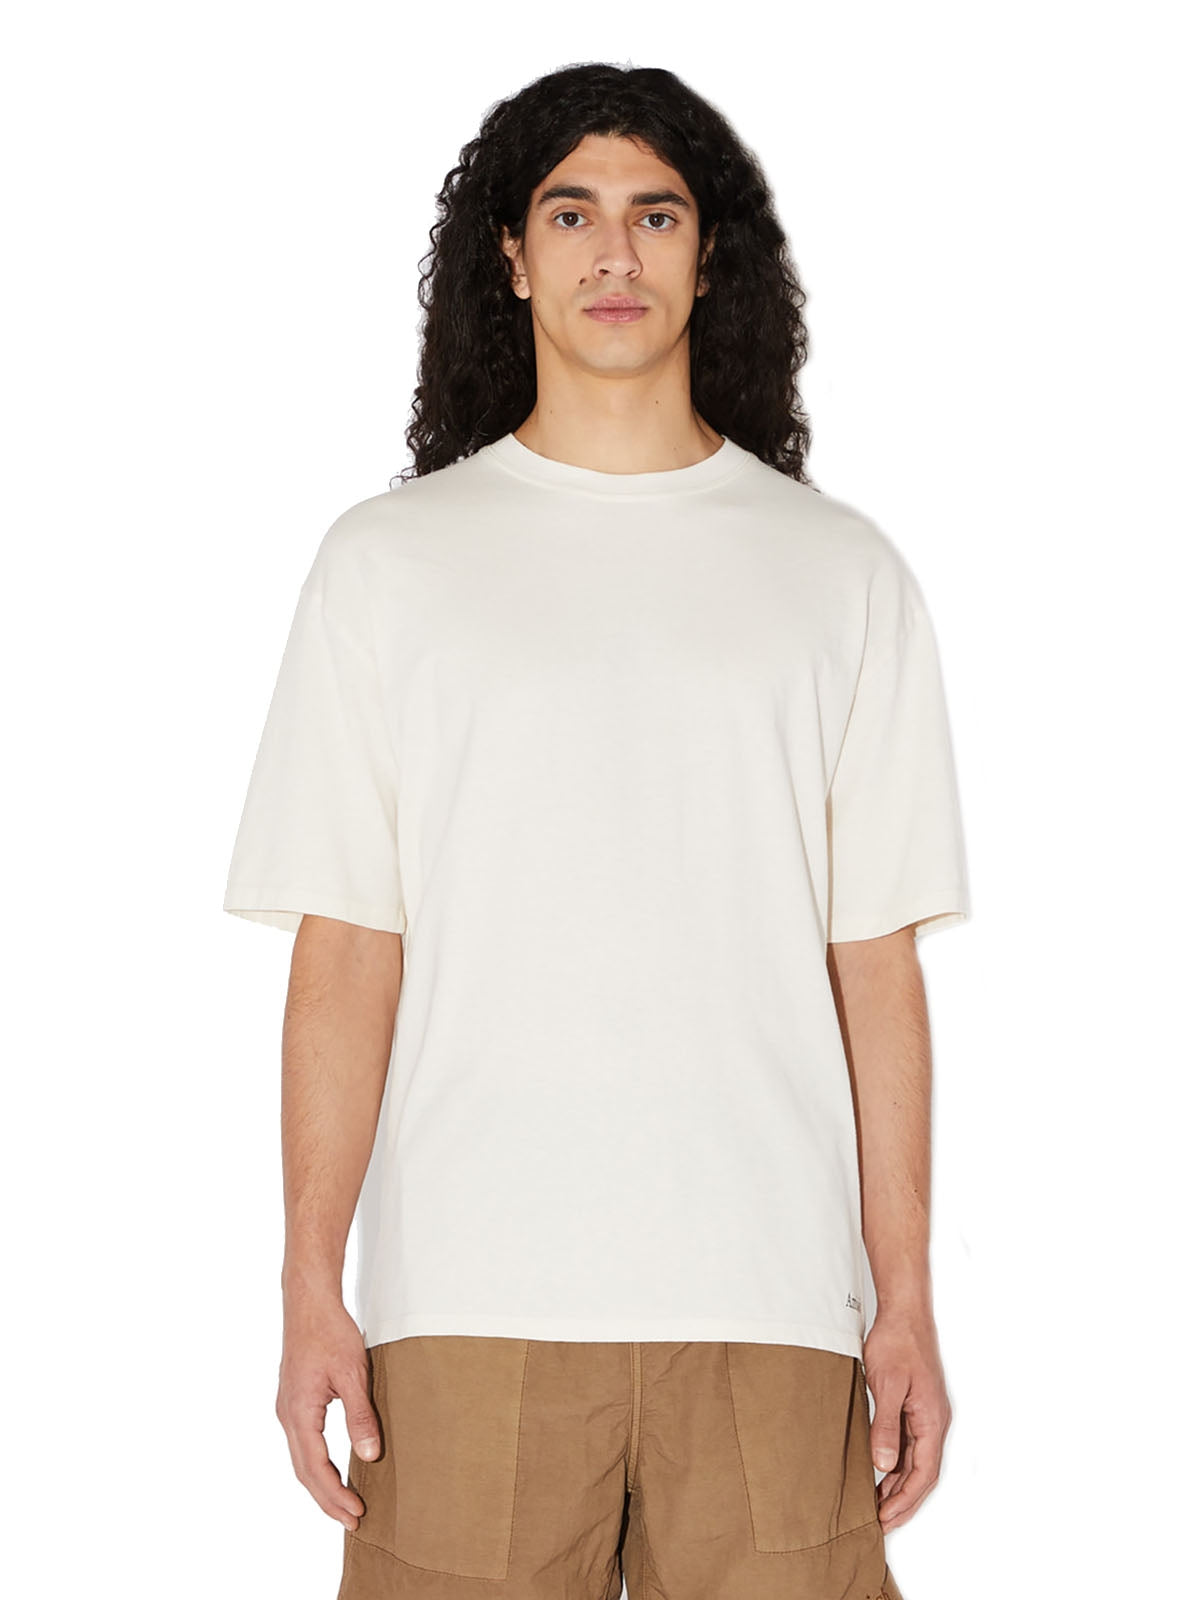 T-shirt Uomo Amish - T-Shirt Girocollo Con Micro Logo - Bianco